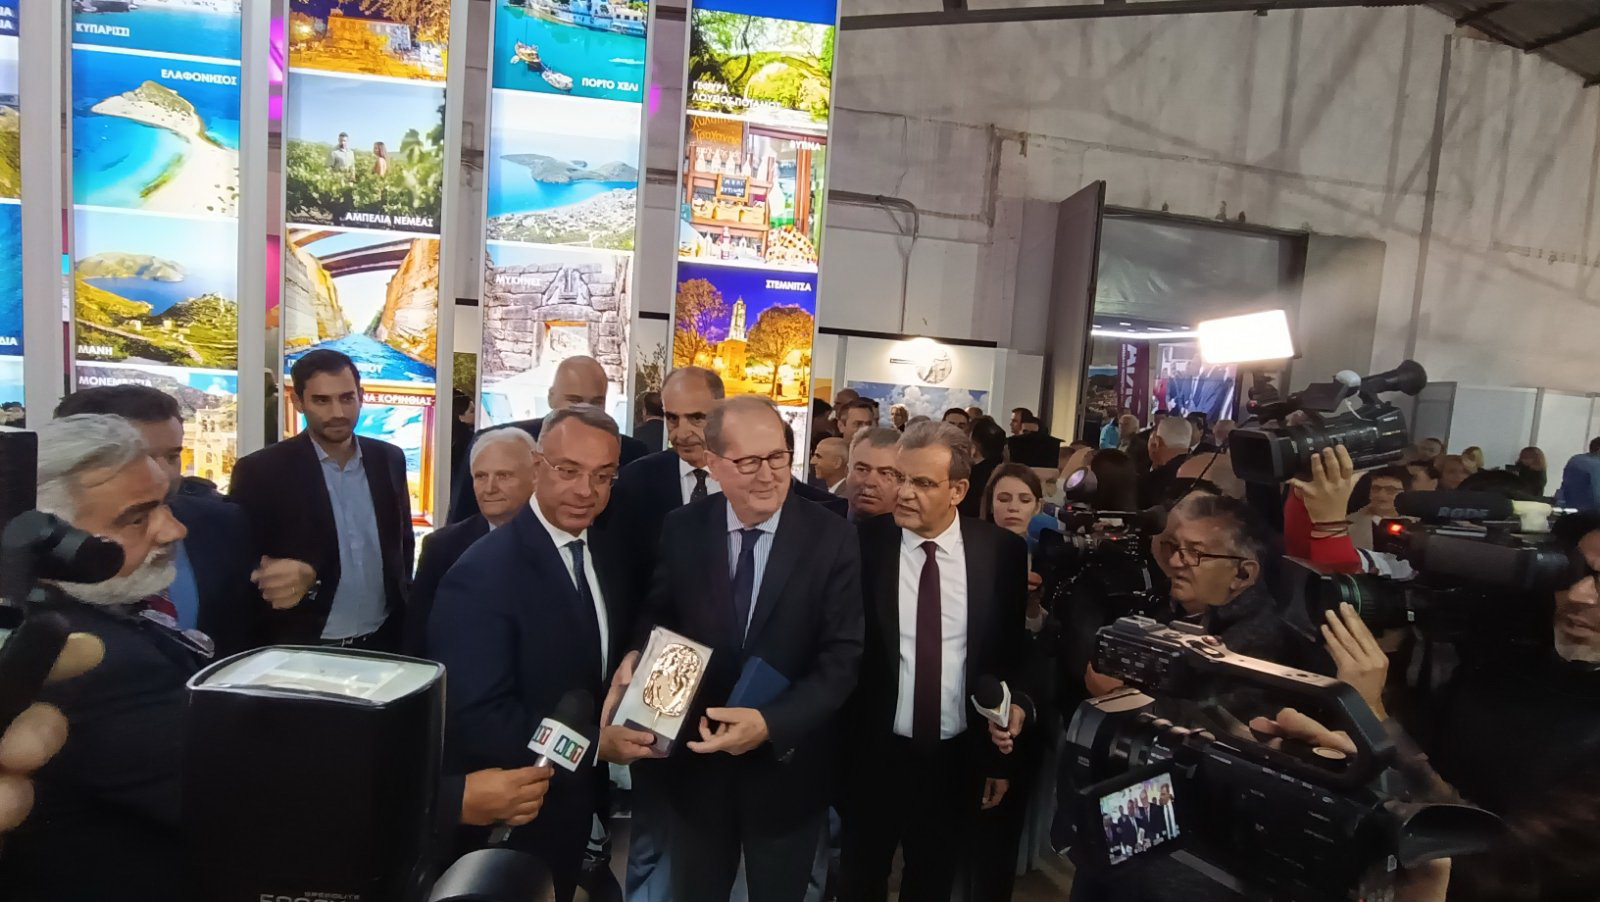 Π. Νίκας στην Εκθεση “Πελοπόννησος Expo 2022” στη Δαλαμανάρα, “άριστη η συνεργασία της Περιφέρειας Πελοποννήσου με τα Επιμελητήρια”